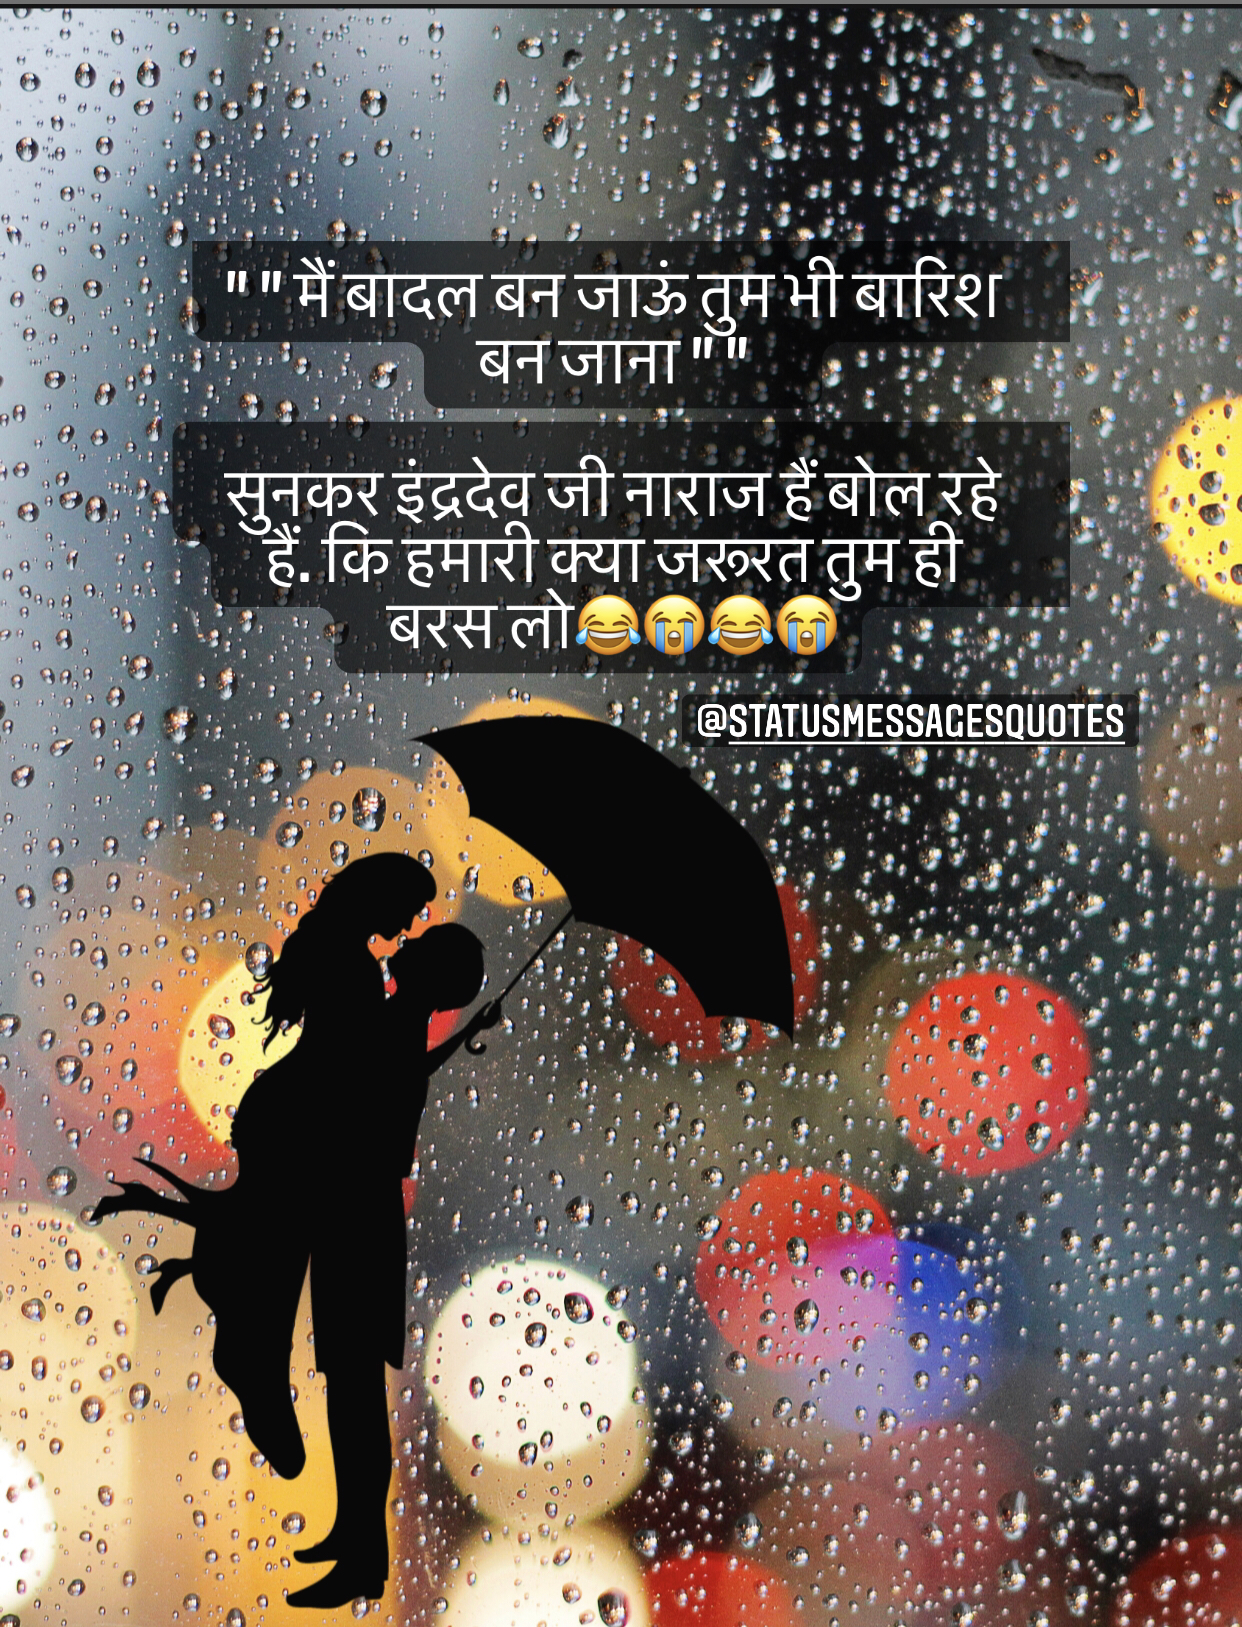 Best Barish Status Messages Quotes Rain Pictures Shayari